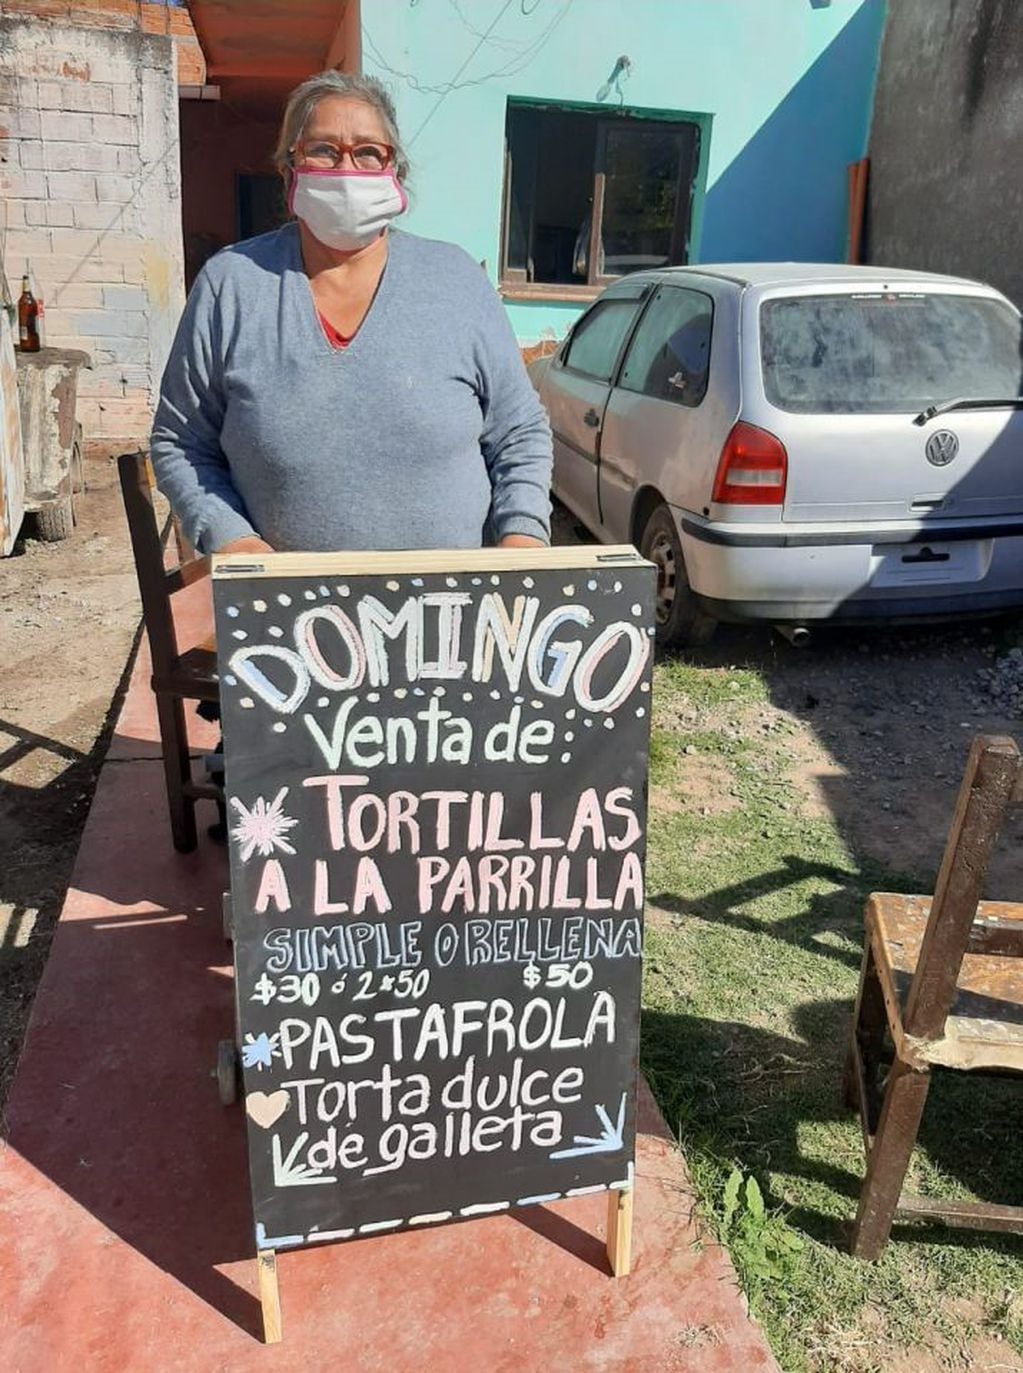 Abuelita vende tortillas a la parrilla (QPS)